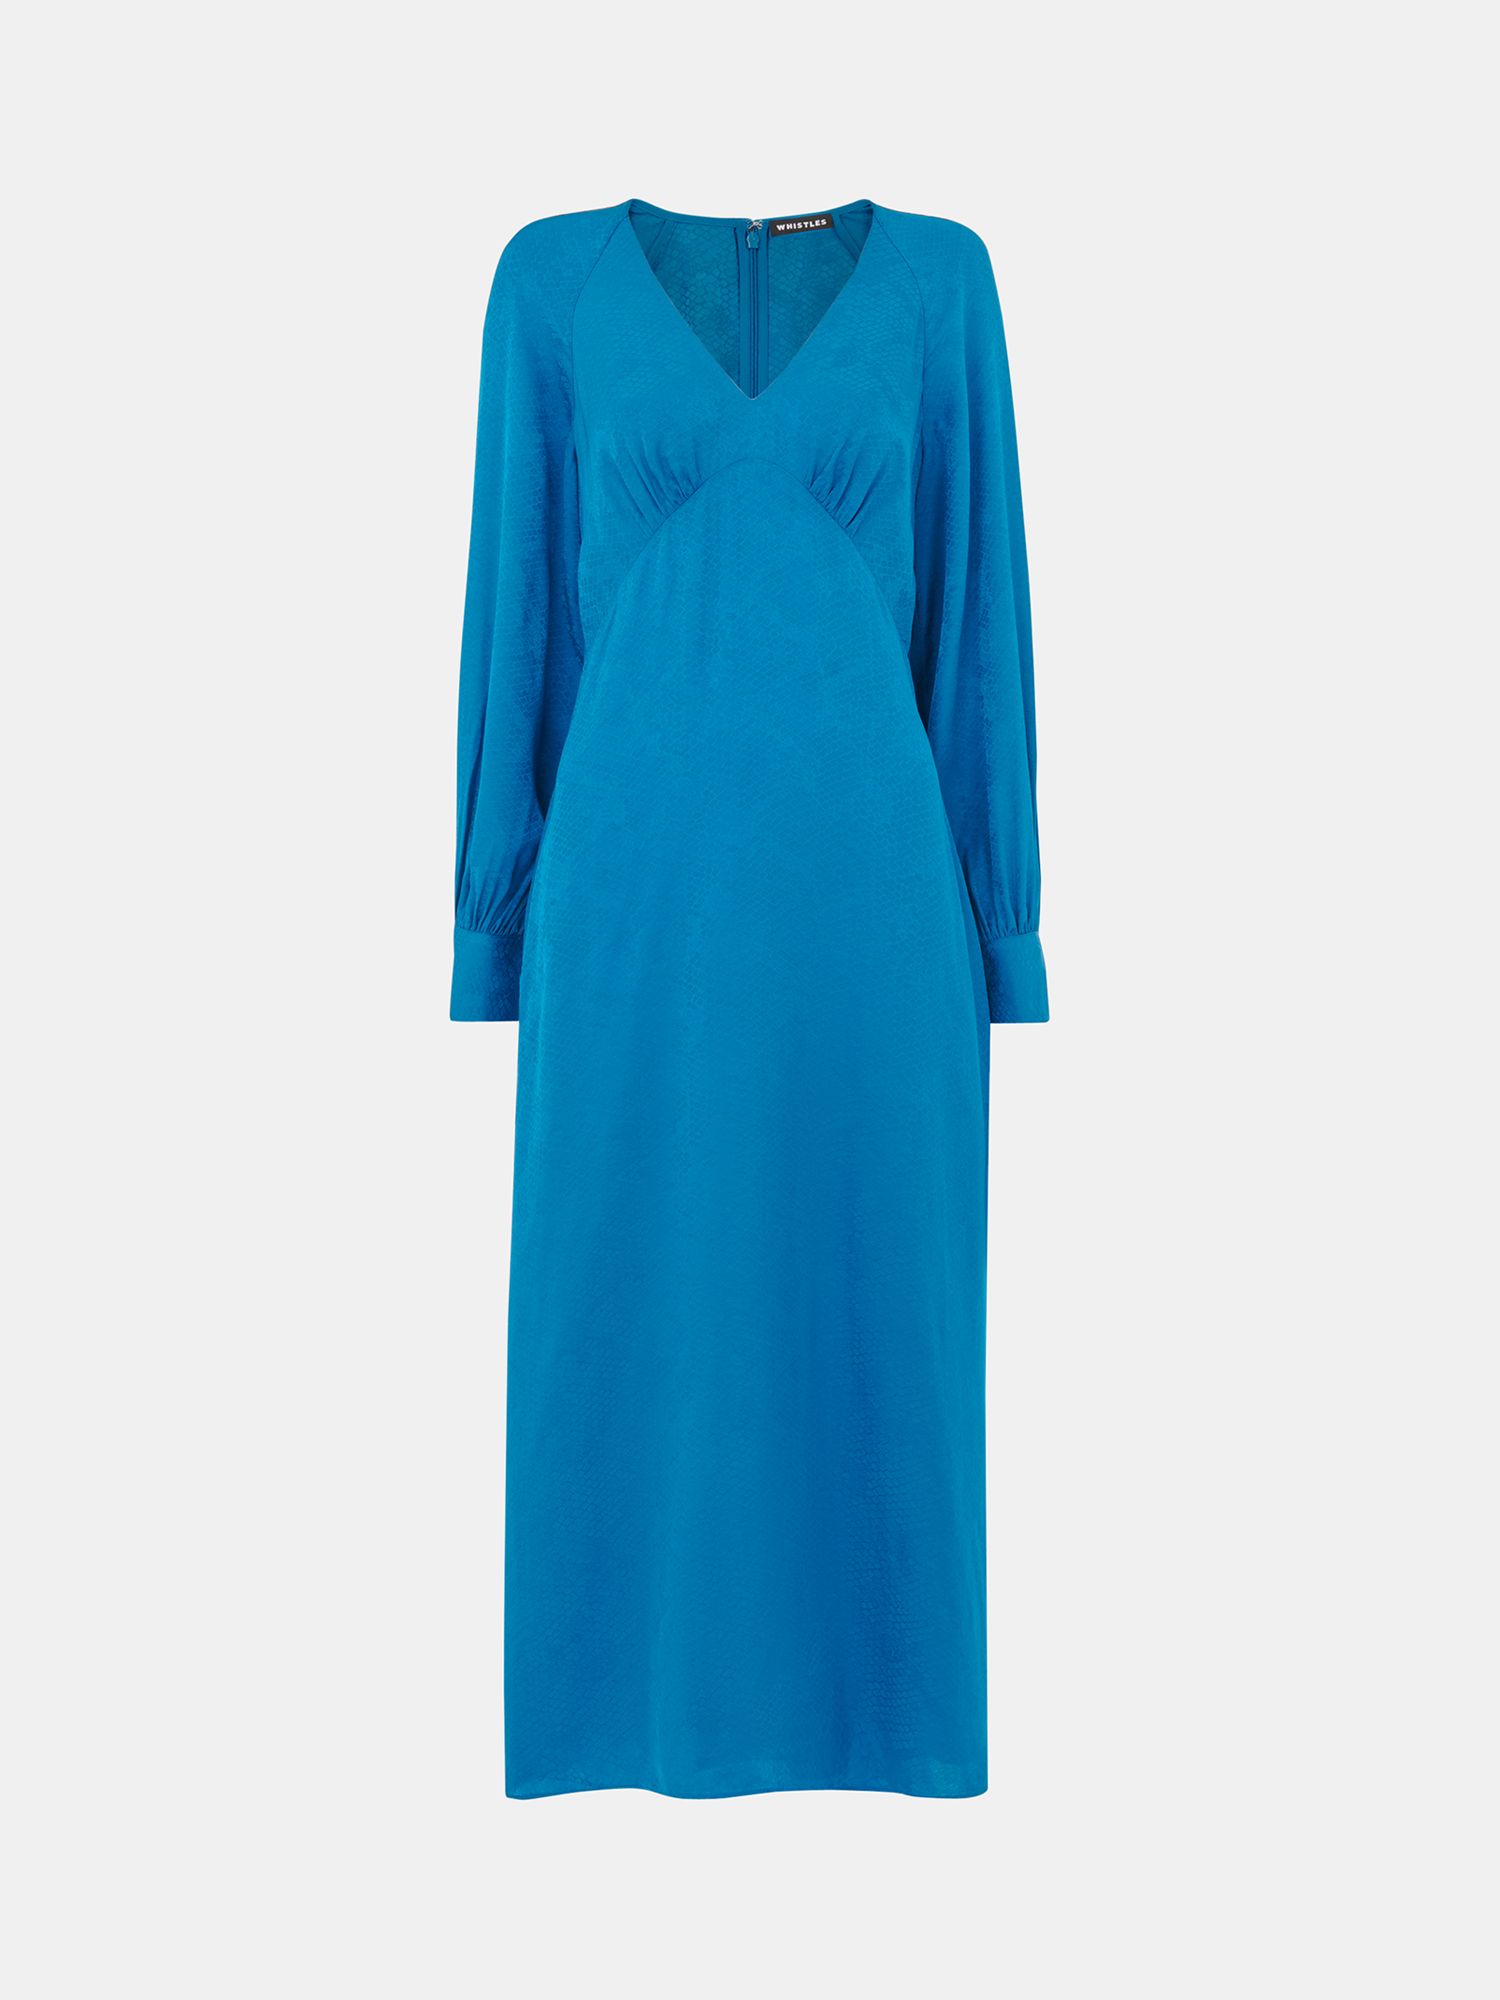 Whistles Serpent Jacquard Midi Dress, Blue, 6